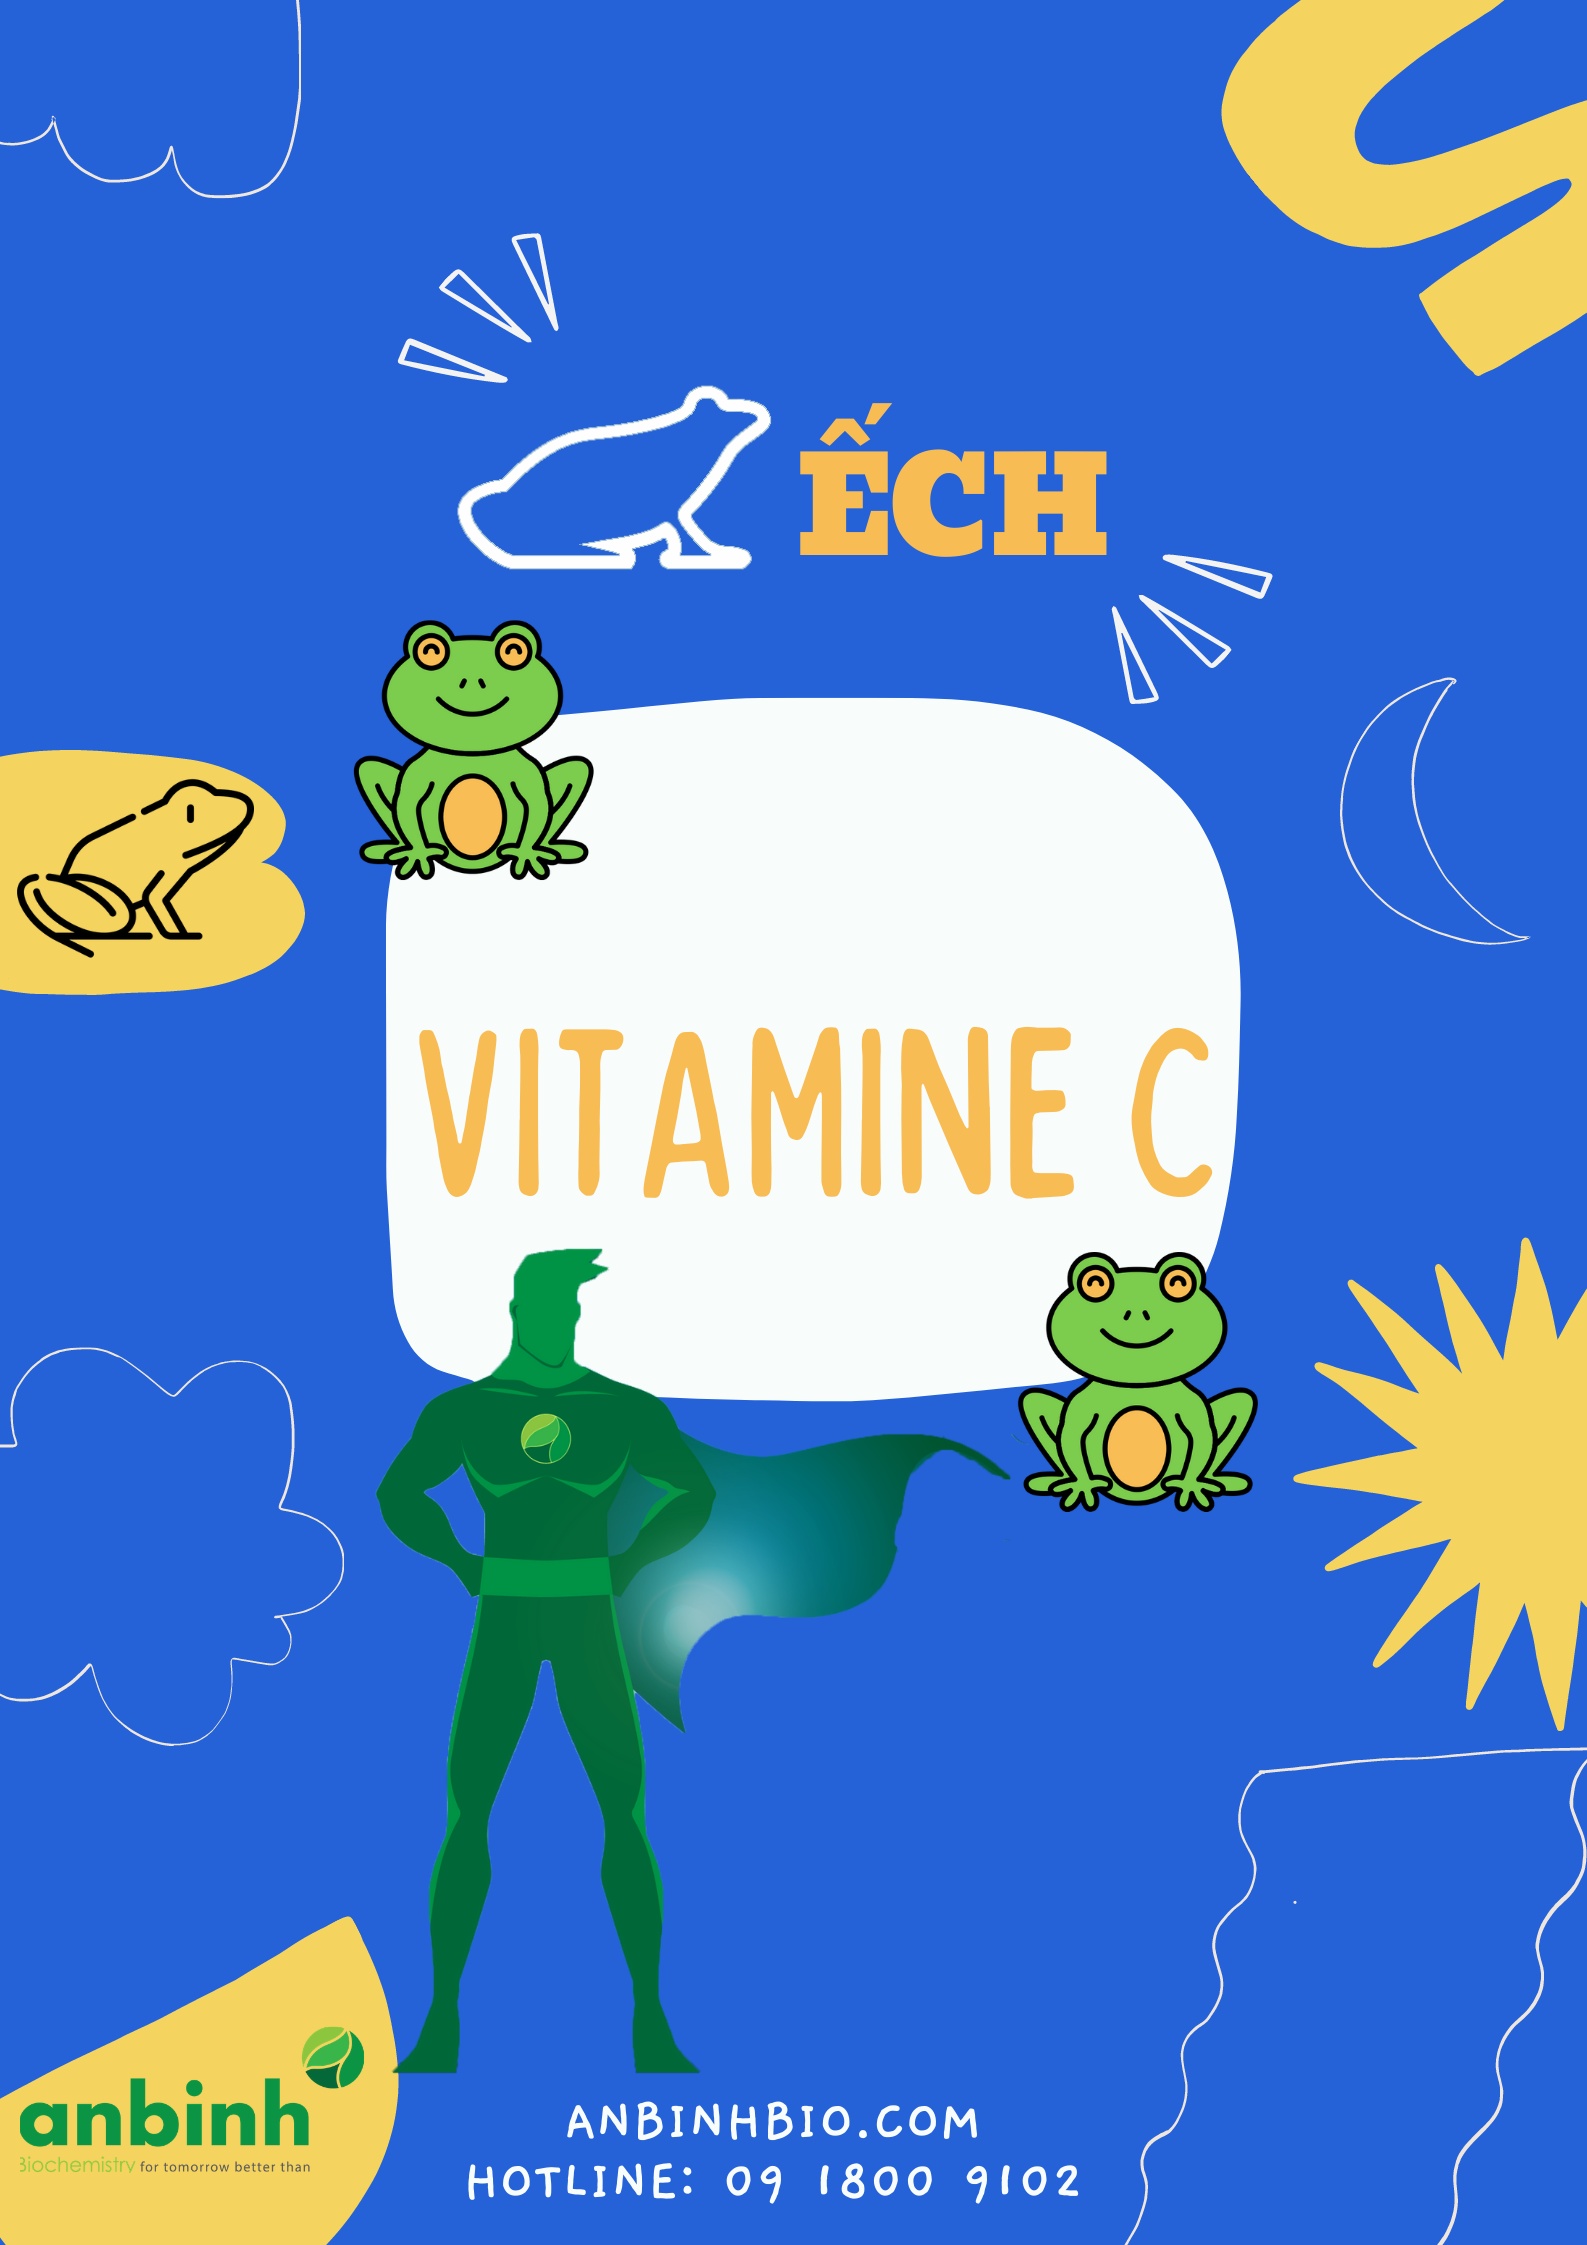 Vitamin C cho ếch